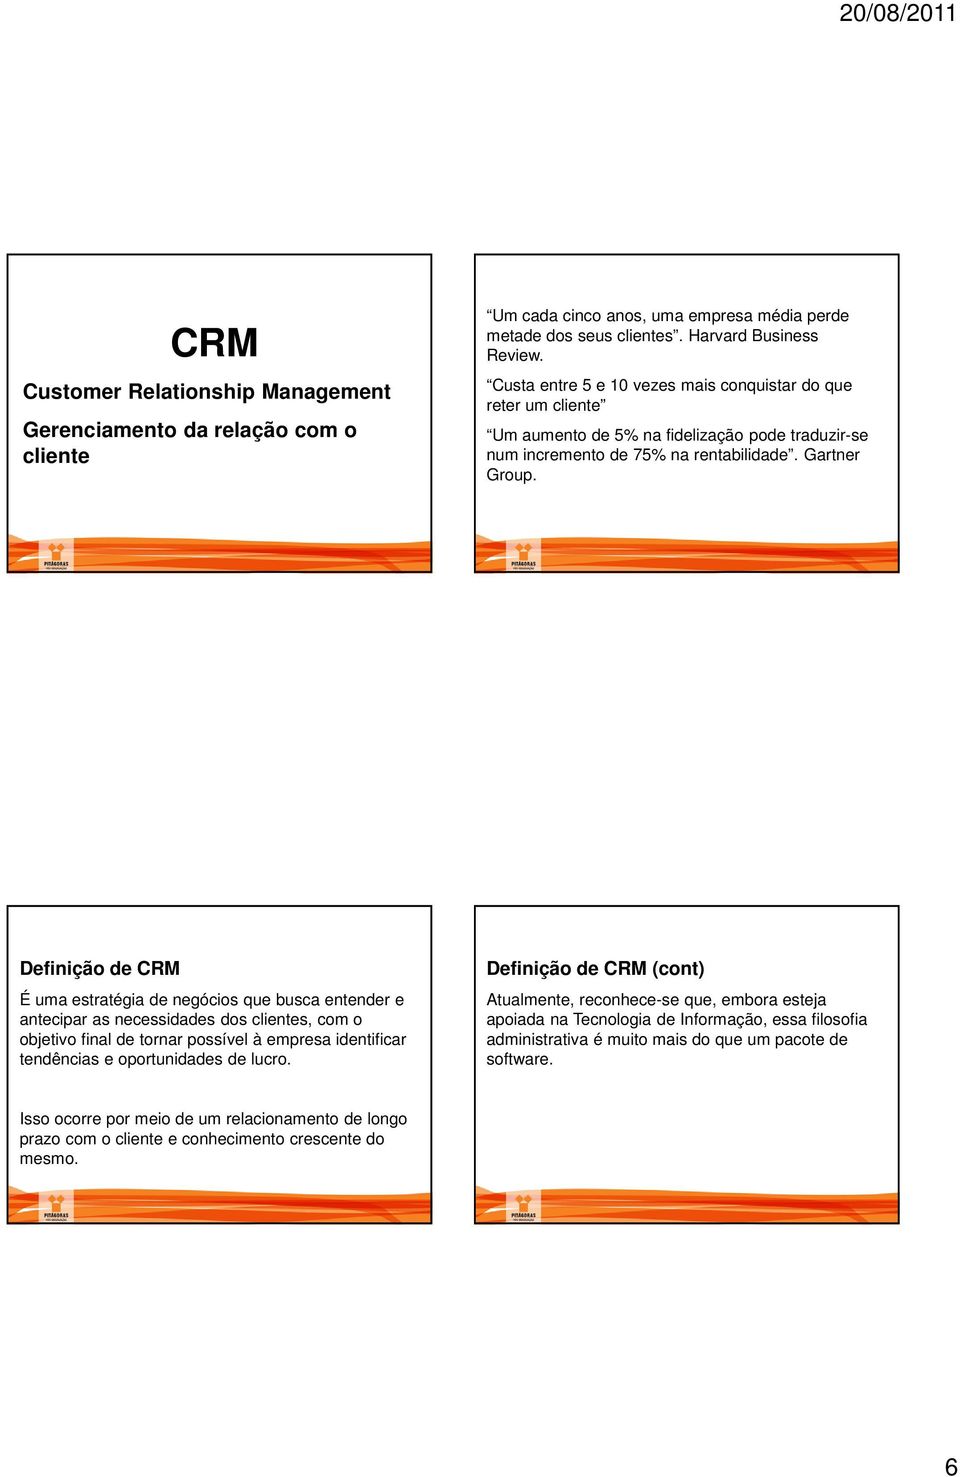 Definição de CRM É uma estratégia de negócios que busca entender e antecipar as necessidades dos clientes, com o objetivo final de tornar possível à empresa identificar tendências e oportunidades de